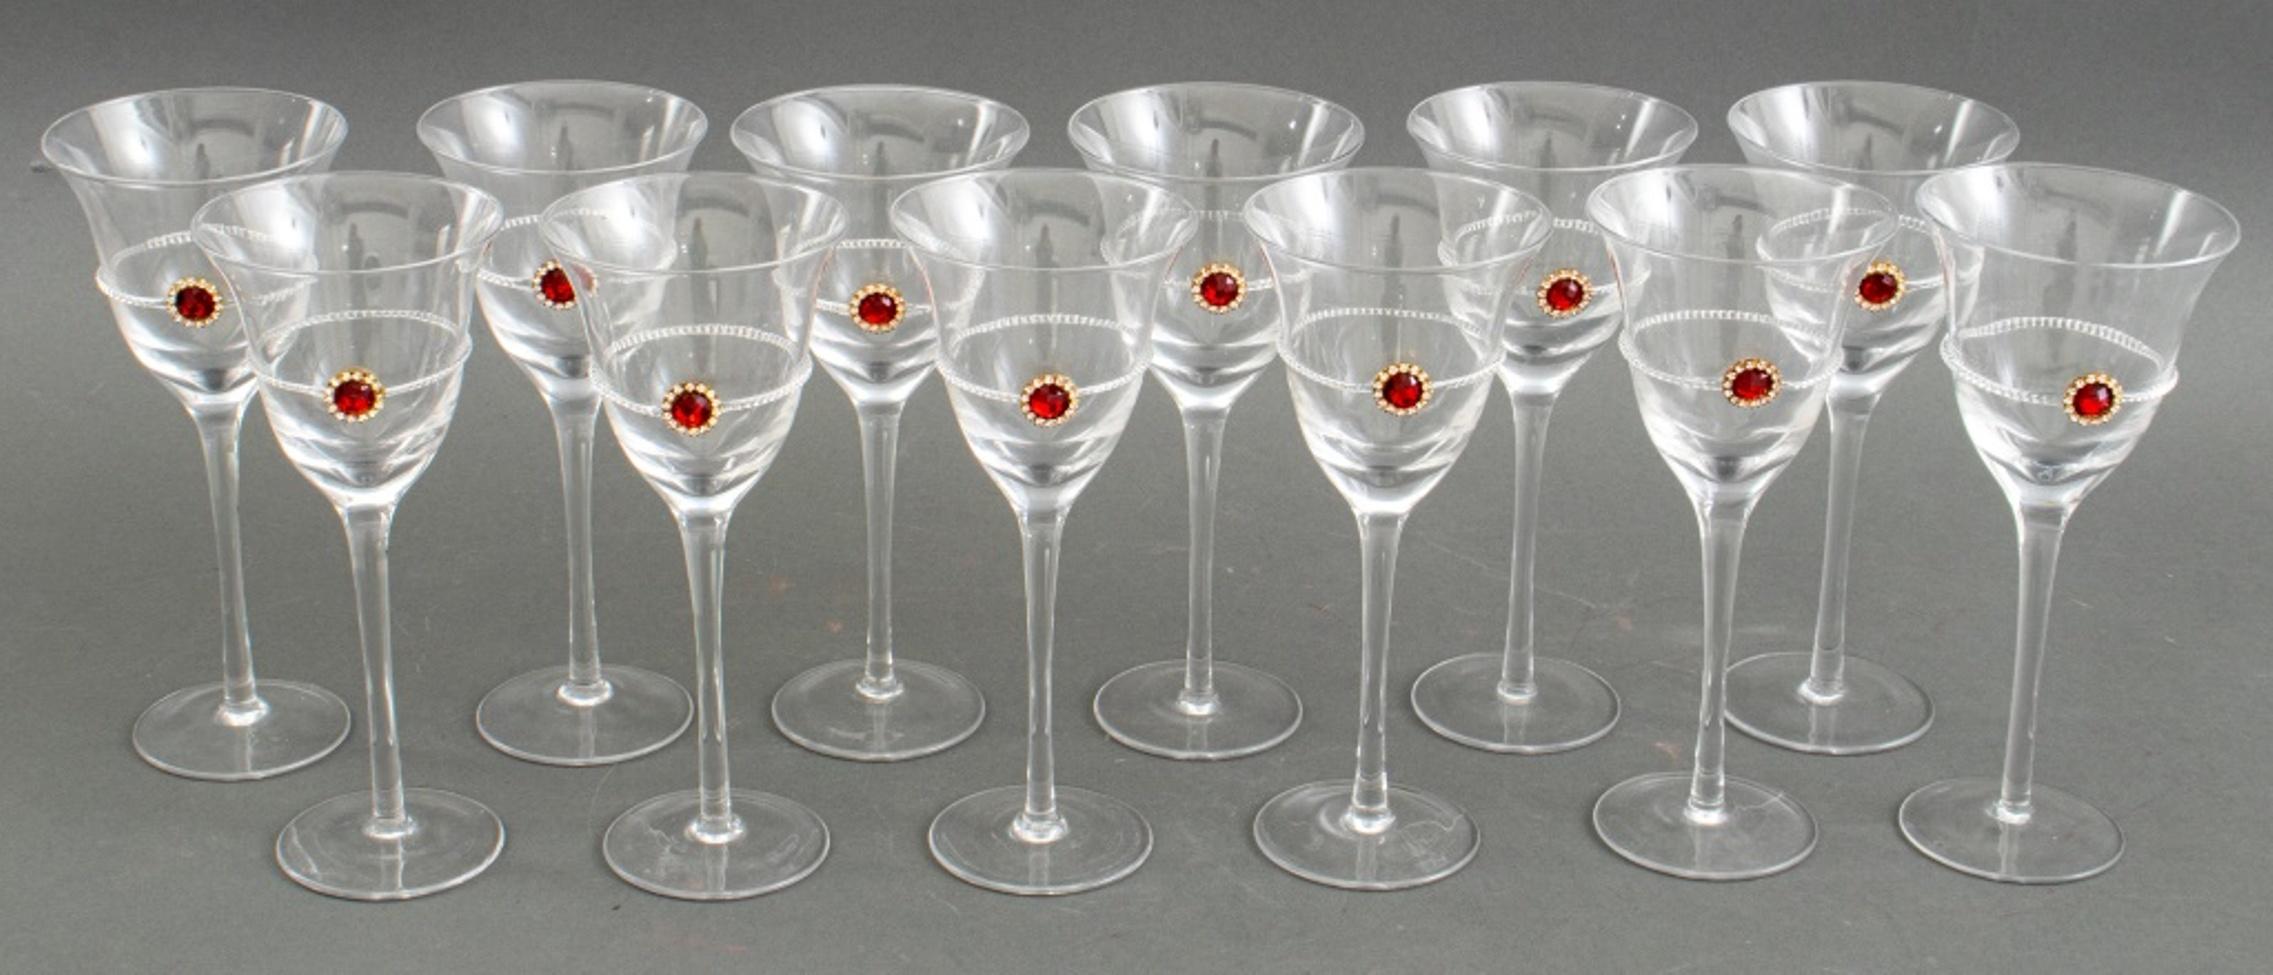 Ensemble de douze verres à vin de style néo-rococo avec un décor de faux rubis et de faux diamants, apparemment non signés.

Dimensions : 8.75